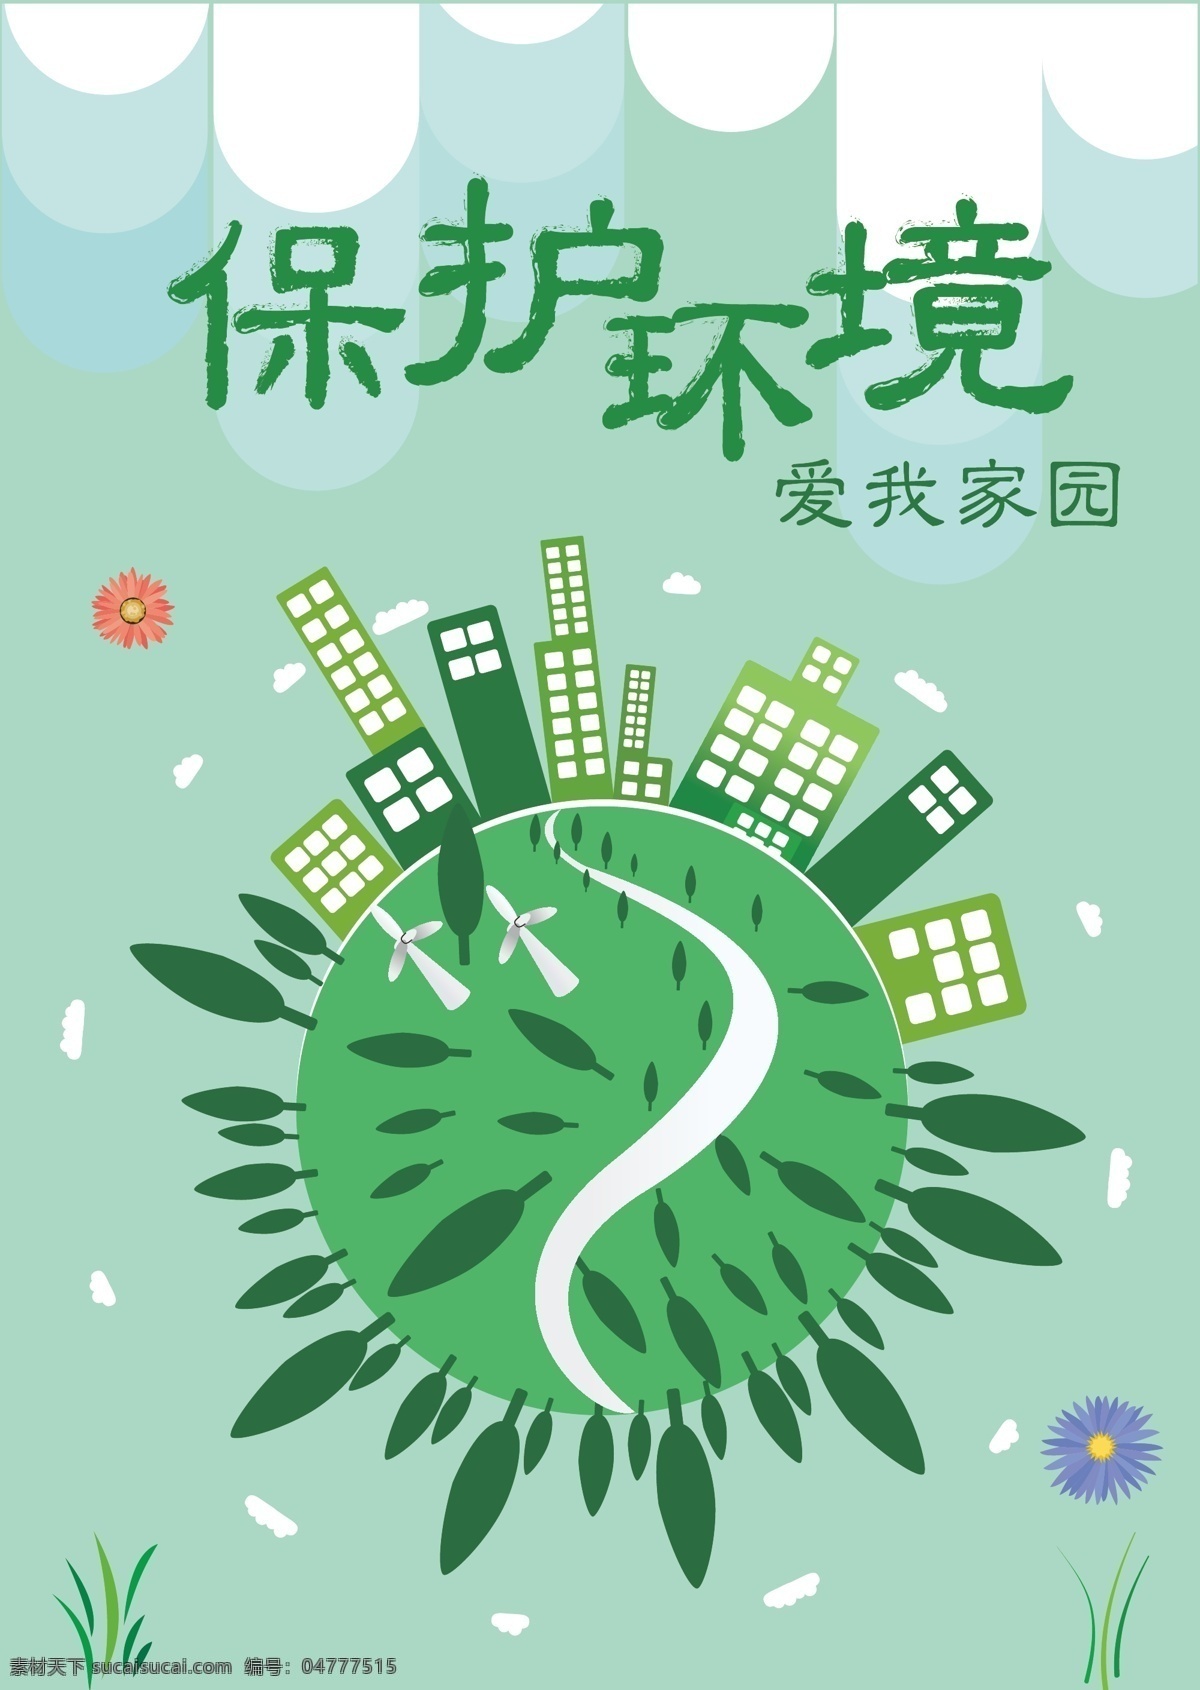 绿色环保海报 保护环境 环保海报 爱我家园 保护环境海报 绿色环保